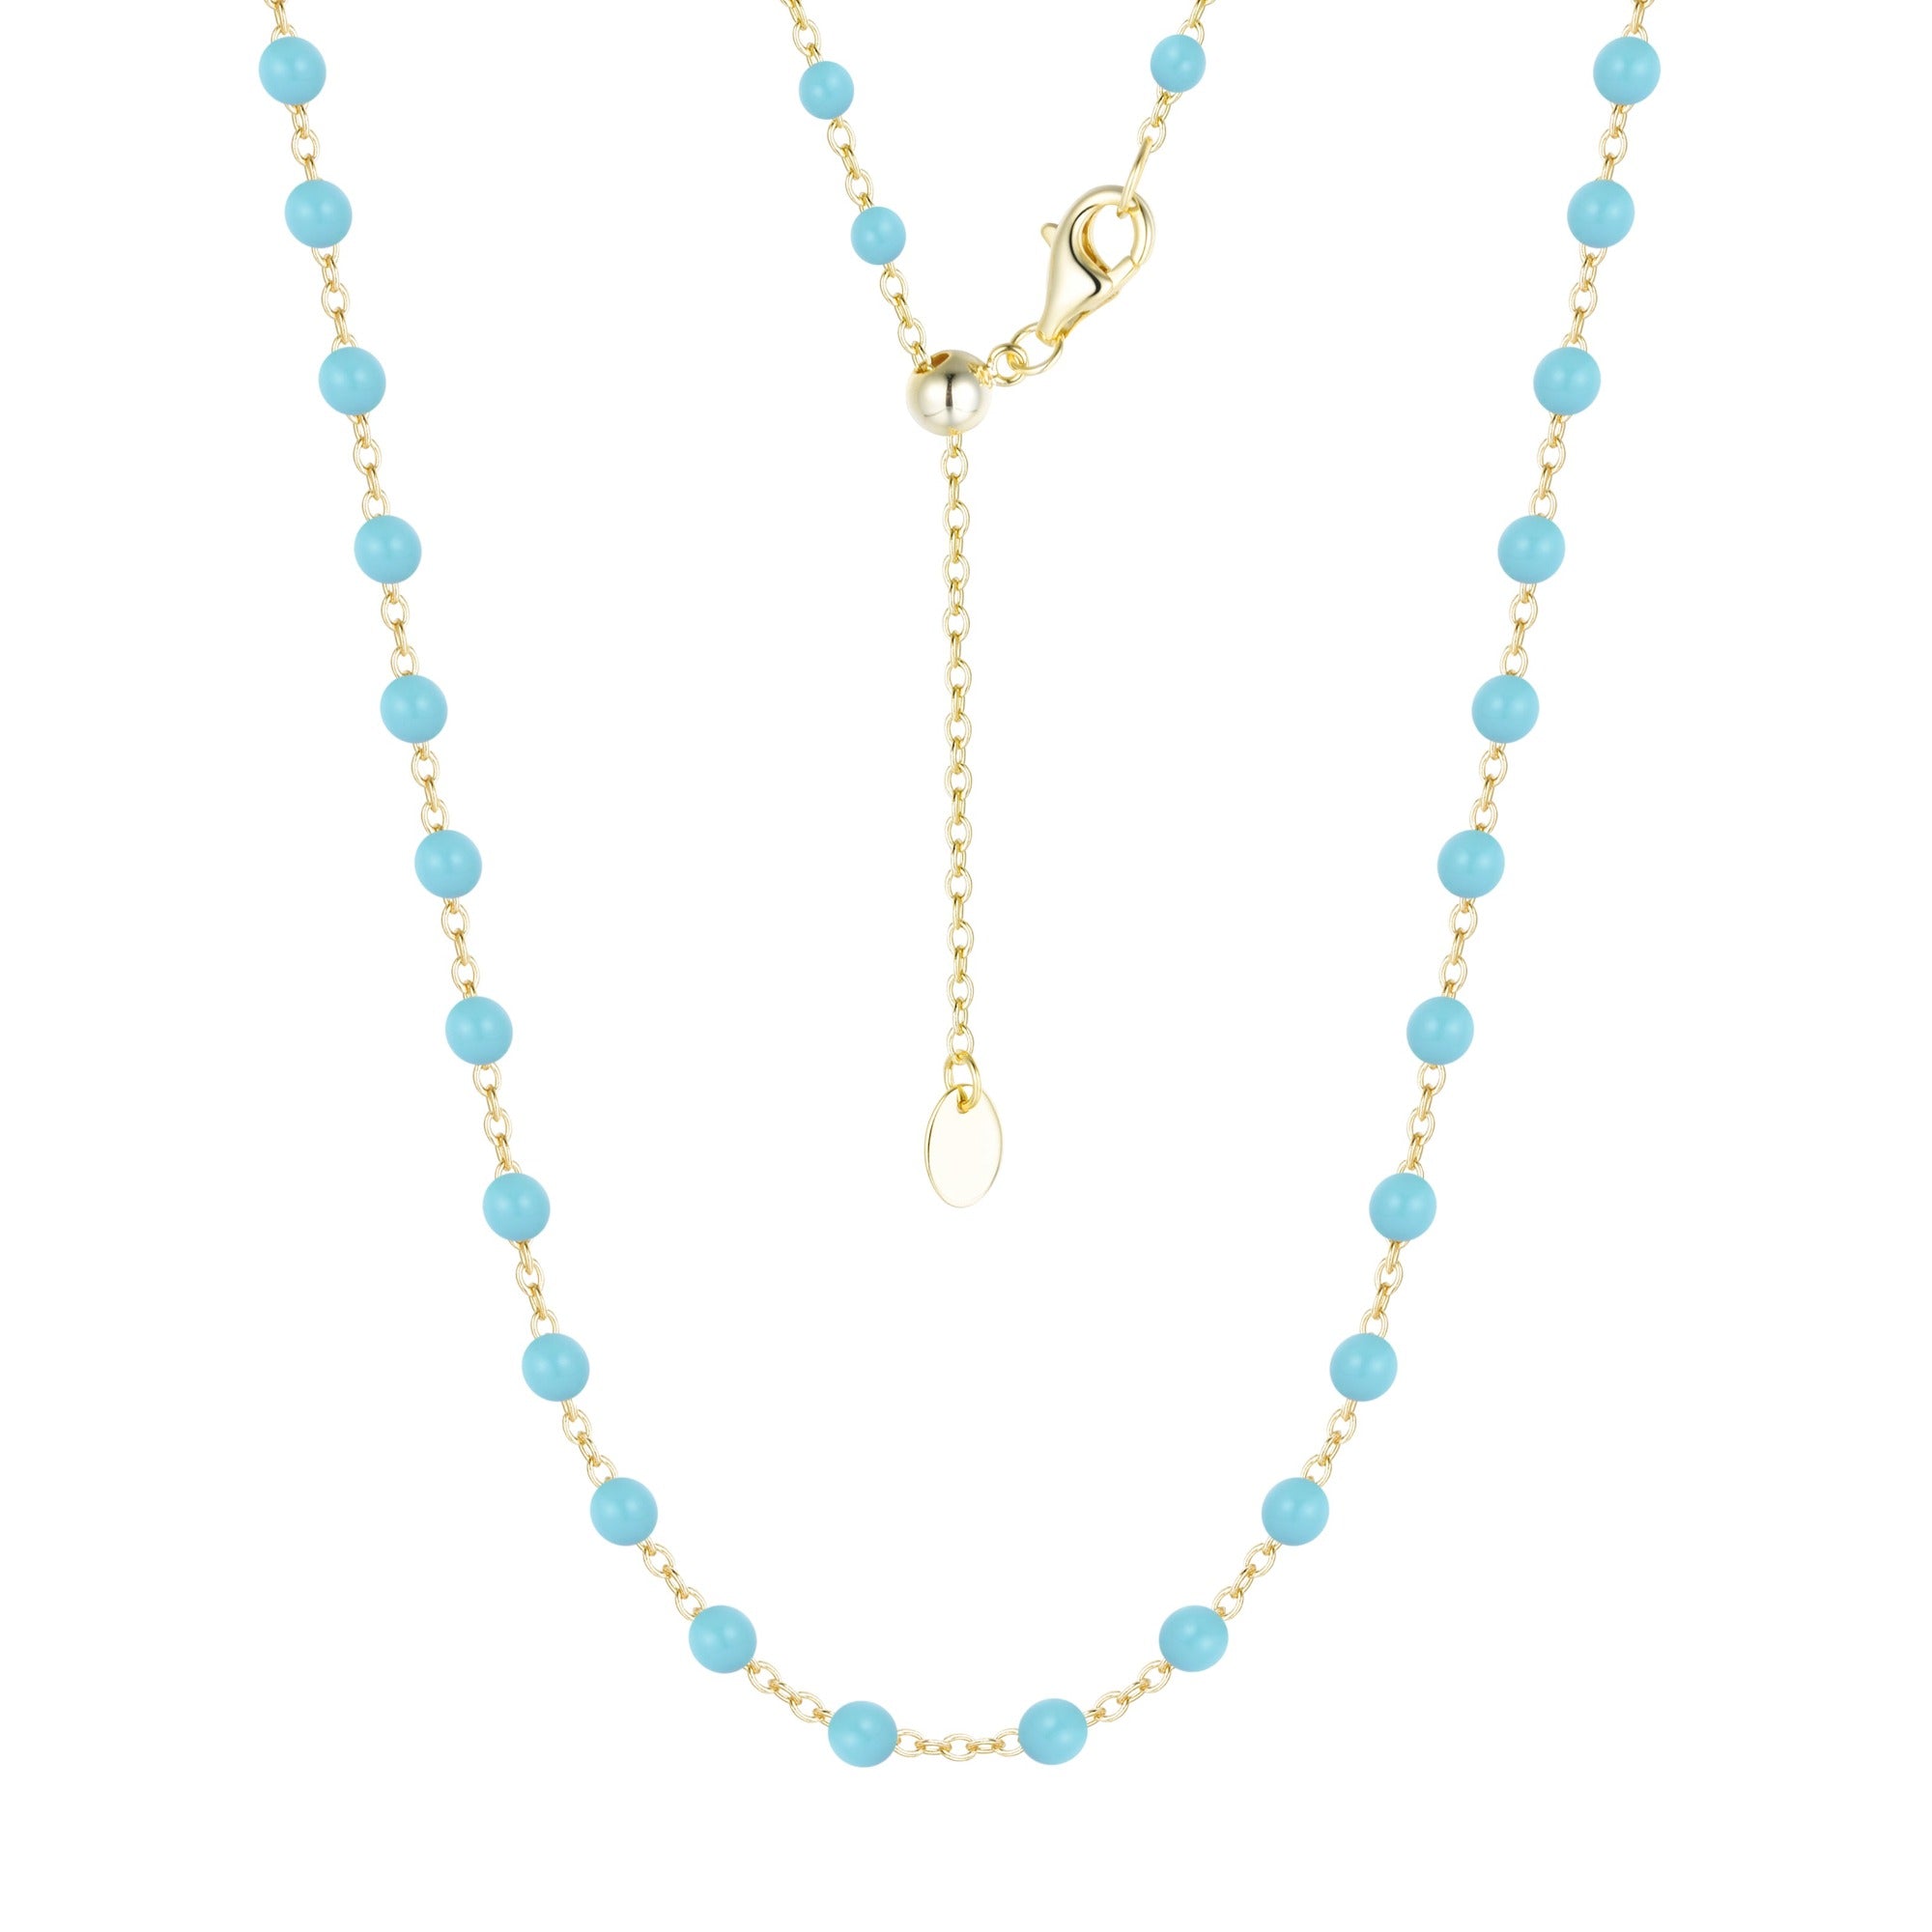 enamel beaded chain necklace large kamaria turquoise